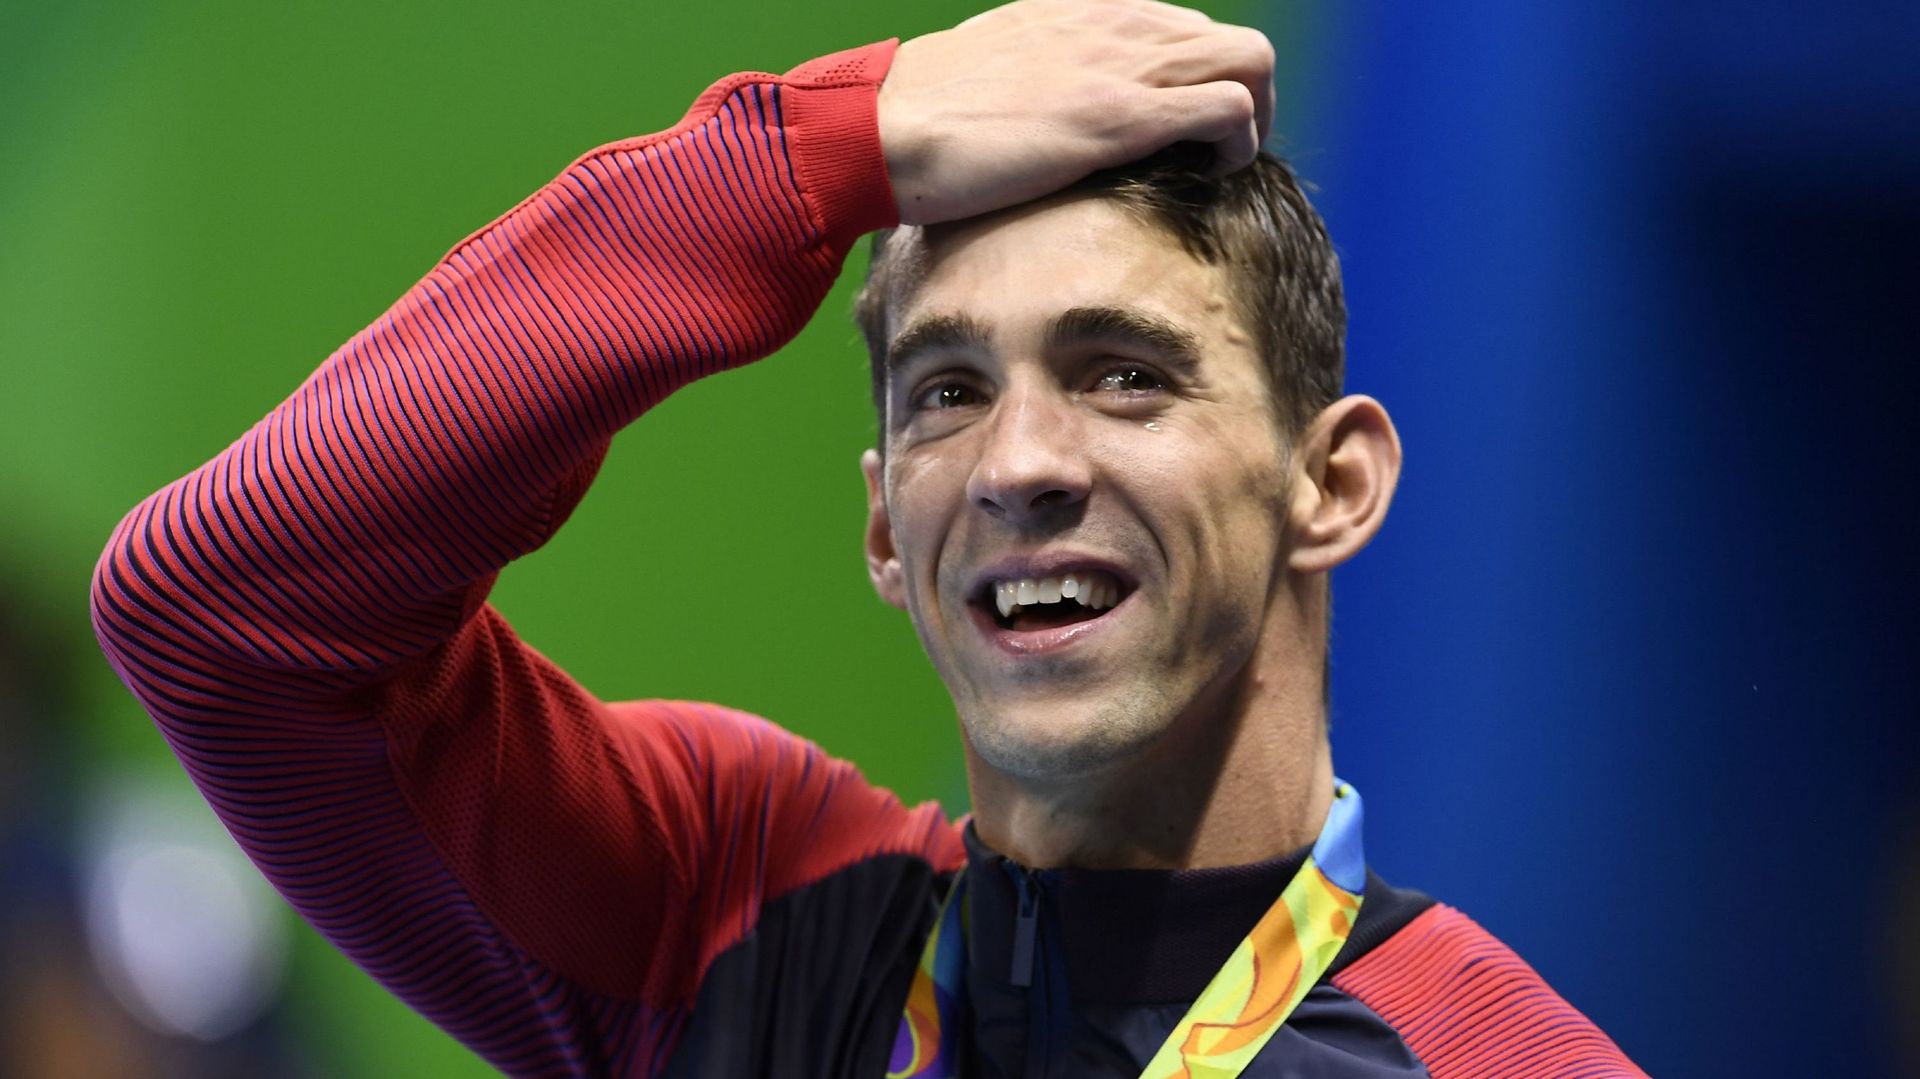 Michael Phelps fin de carriere Rio 2016